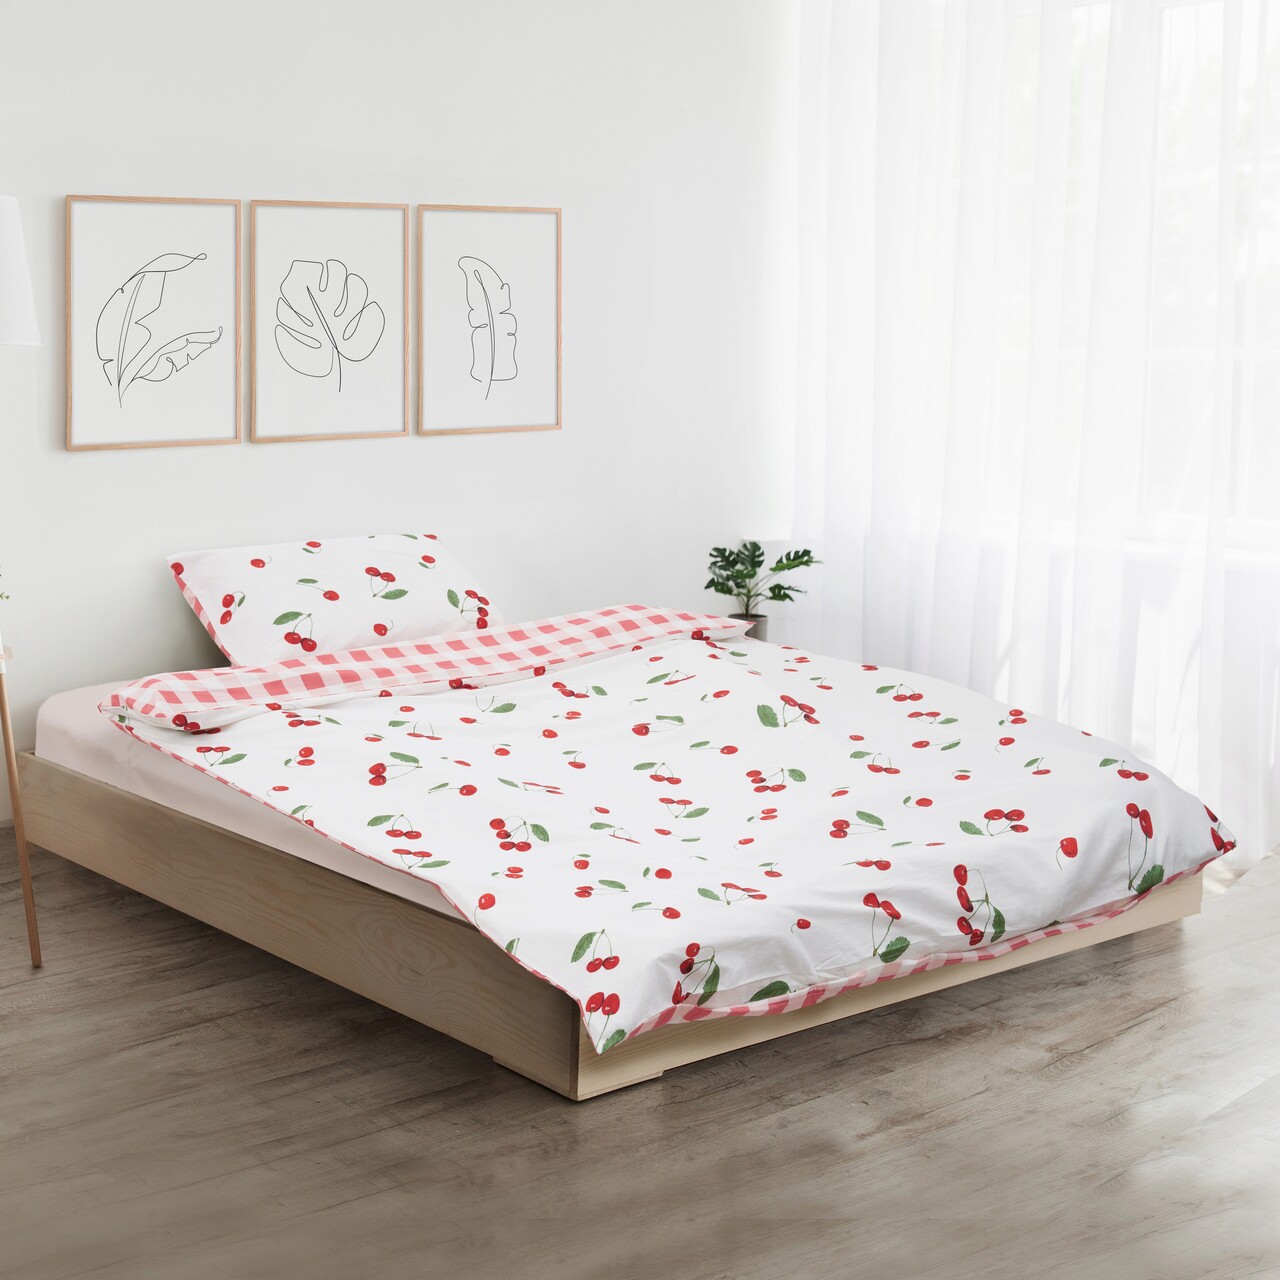 Lenjerie de pat pentru o persoana Cherry, Heinner Home, 150x200 cm, bumbac, multicolor